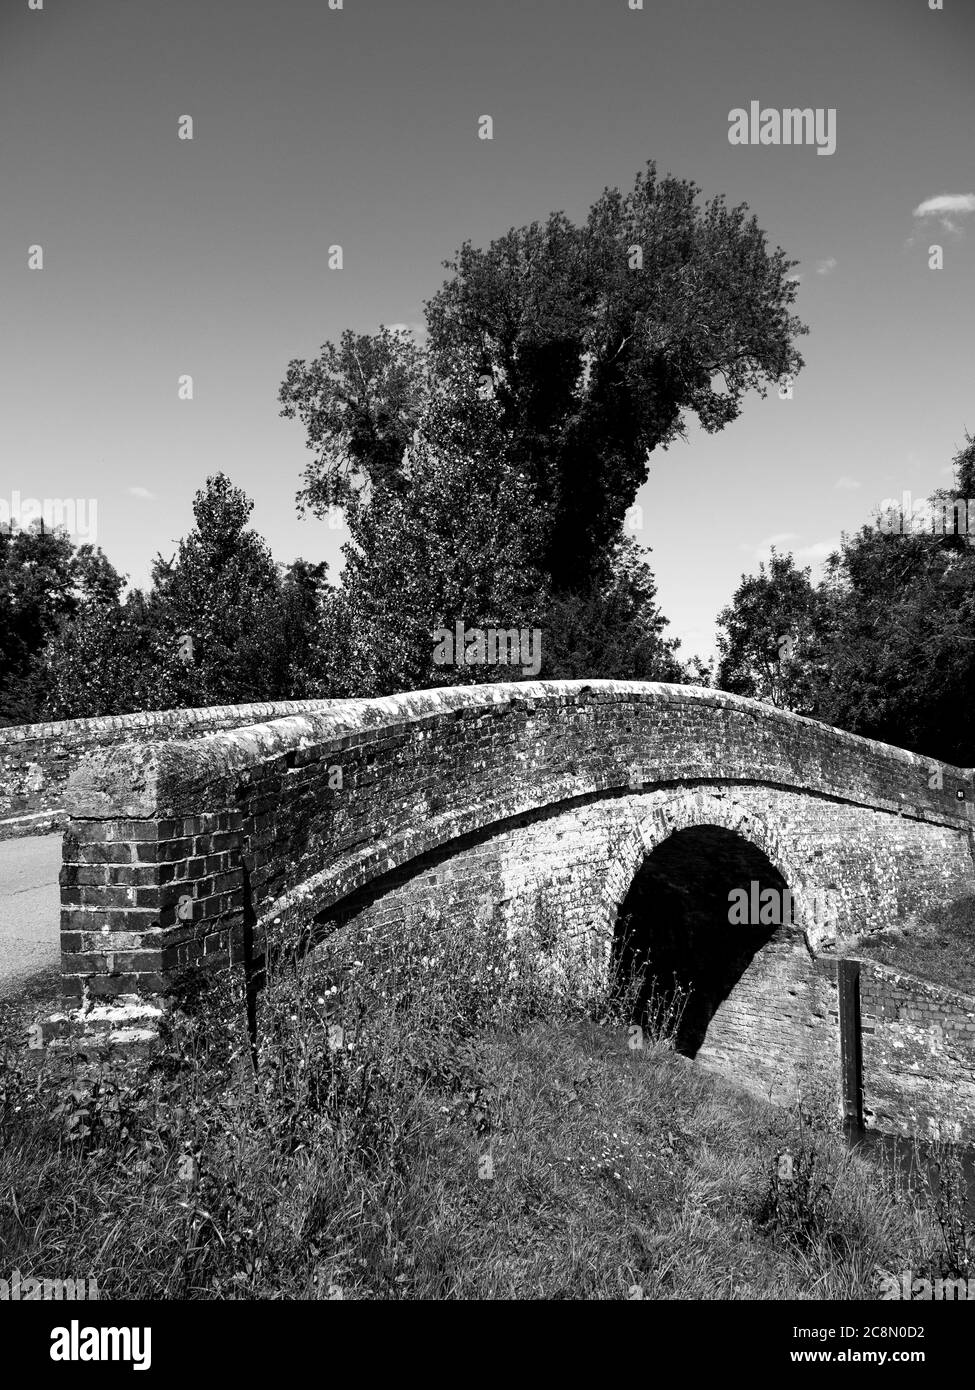 Paysage noir et blanc calme de Wire Lock Bridge, Kennet et Avon Canal, Kintbury, Berkshire, Angleterre, Royaume-Uni, GB. Banque D'Images